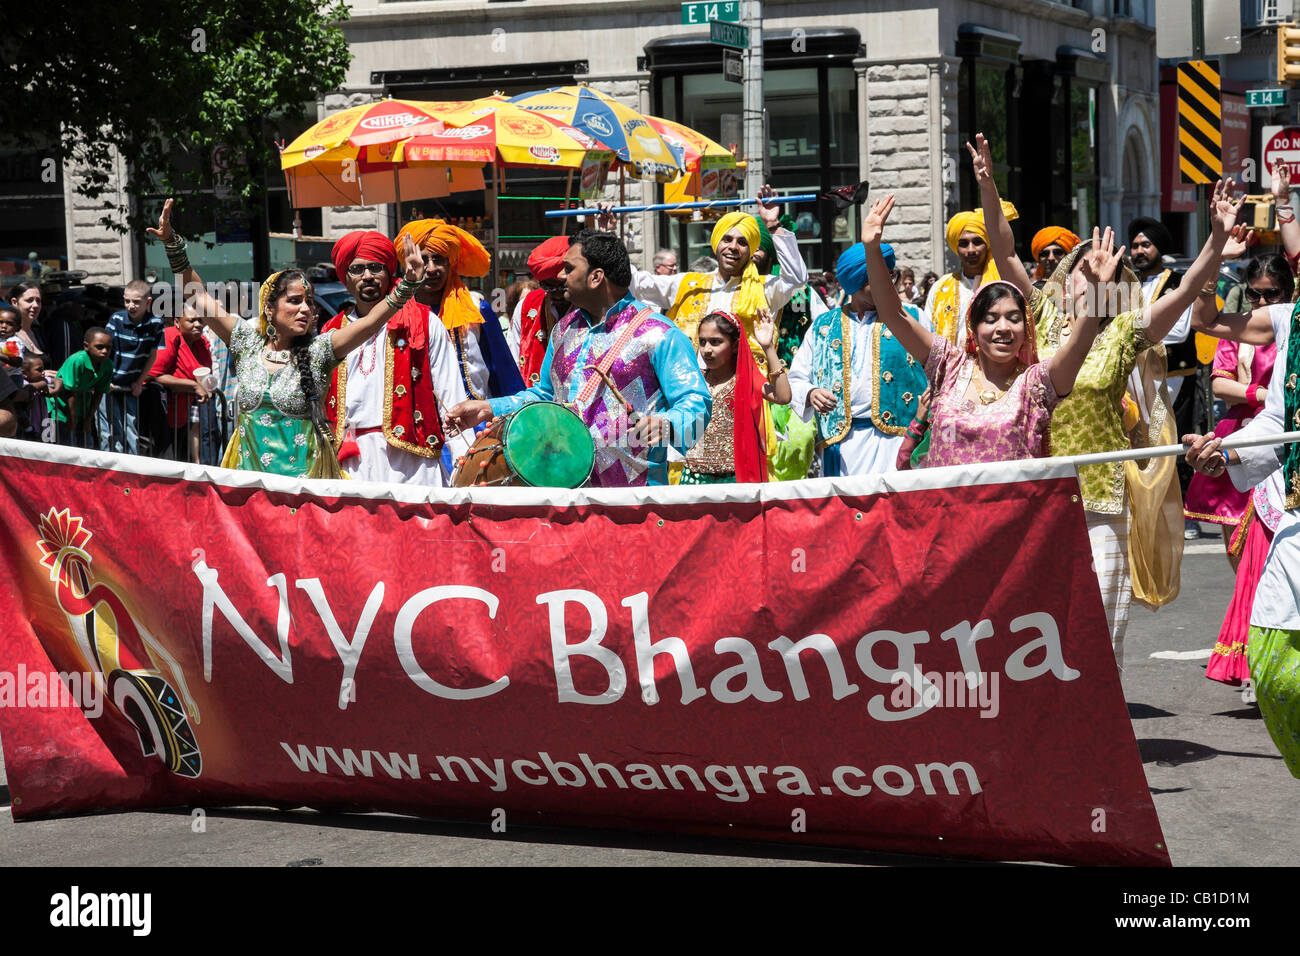 New York, Stati Uniti d'America. 19 Maggio, 2012. La Dance Parade vetrine quasi 80 diversi generi di danza e culture. NYC Bhangra ballerini promuovere tradizionale danza indiana attraverso le prestazioni e l'istruzione. Foto Stock